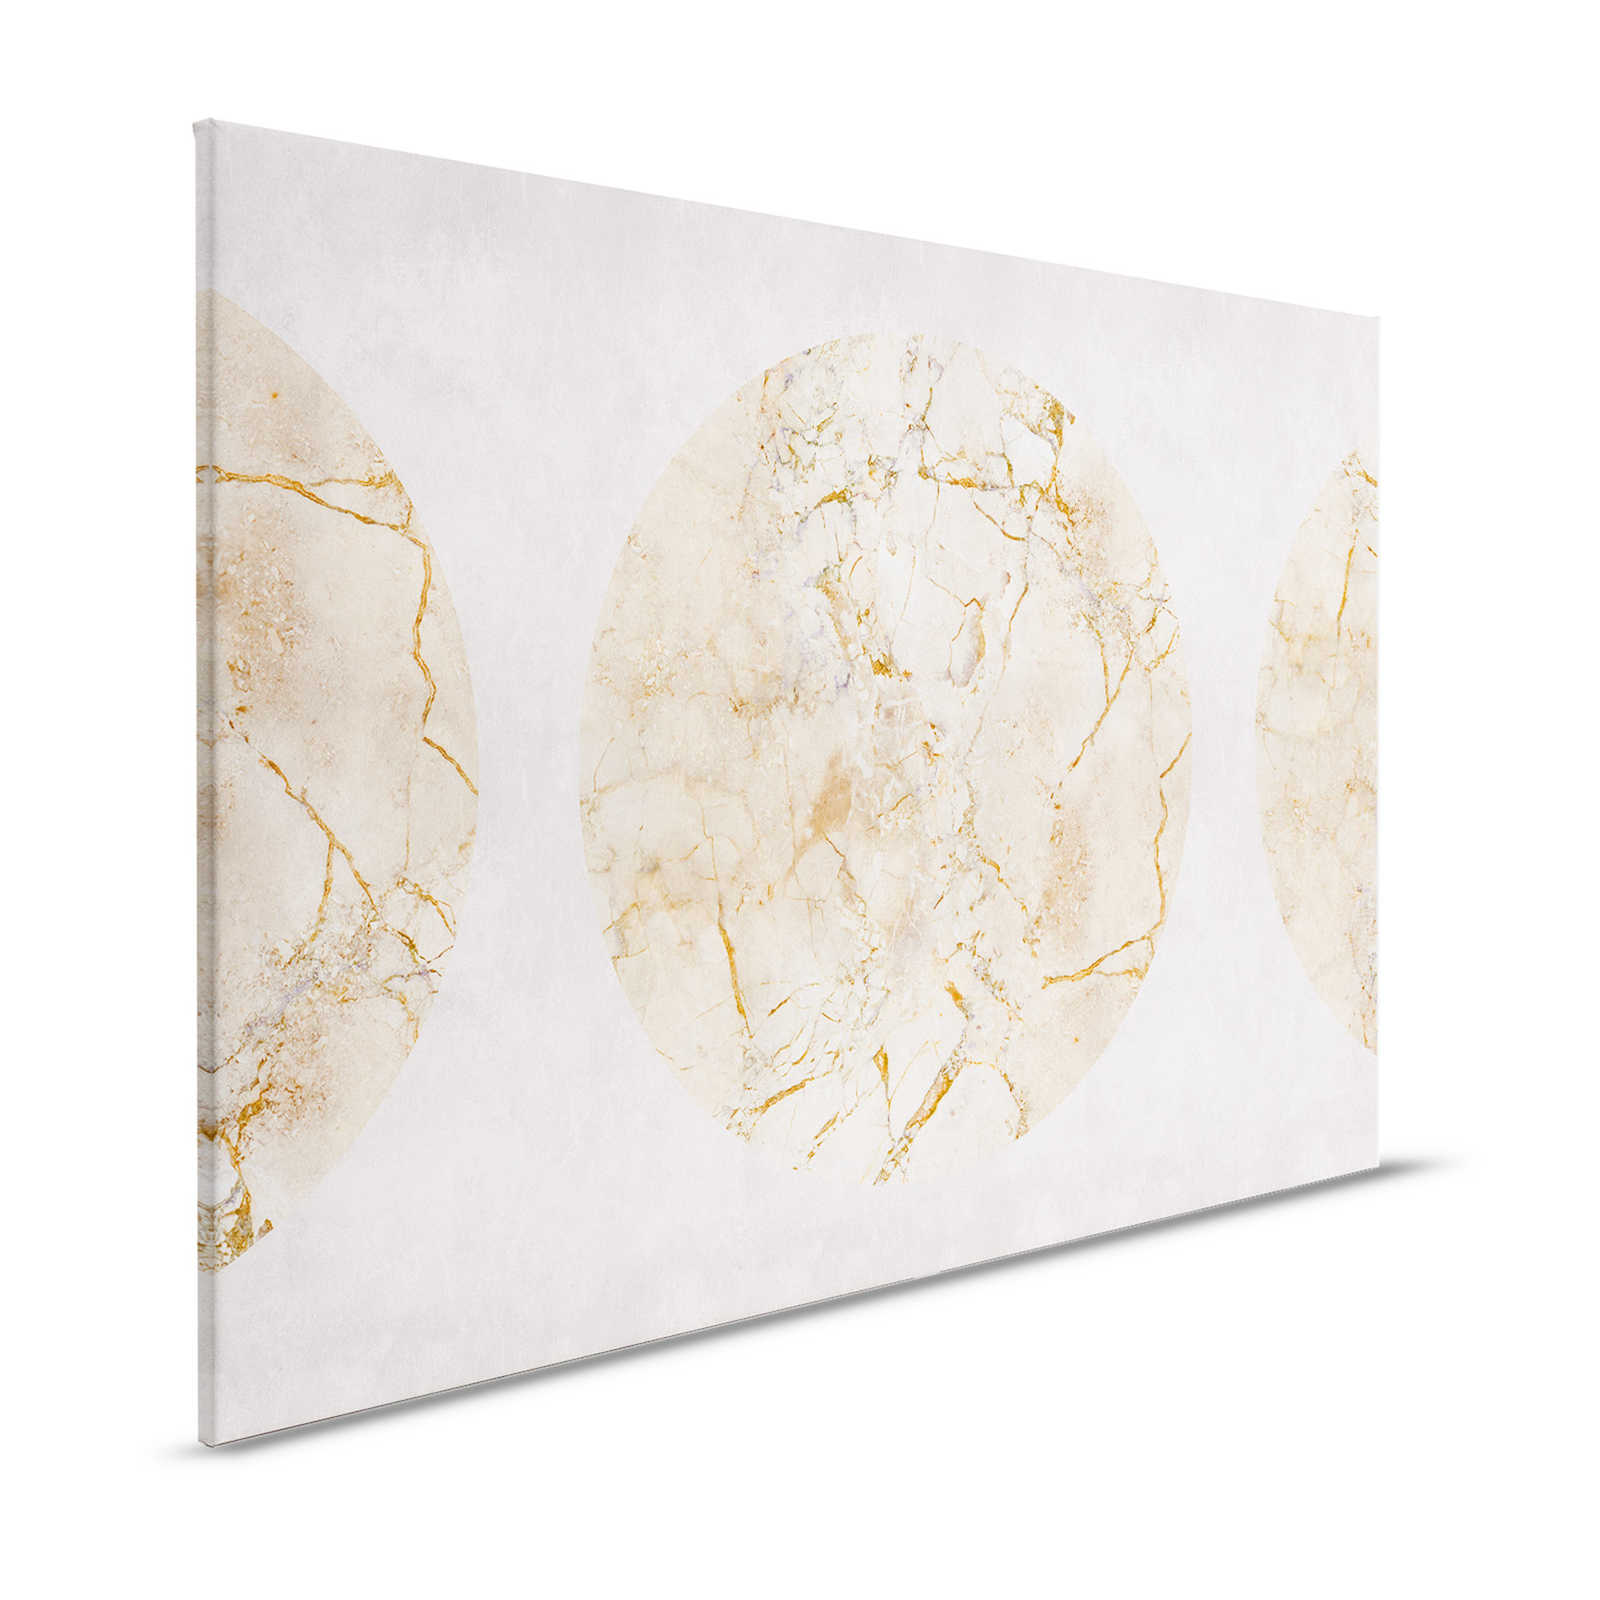 Venus 1 - toile marbre doré avec motif circulaire & aspect crépi - 1,20 m x 0,80 m
